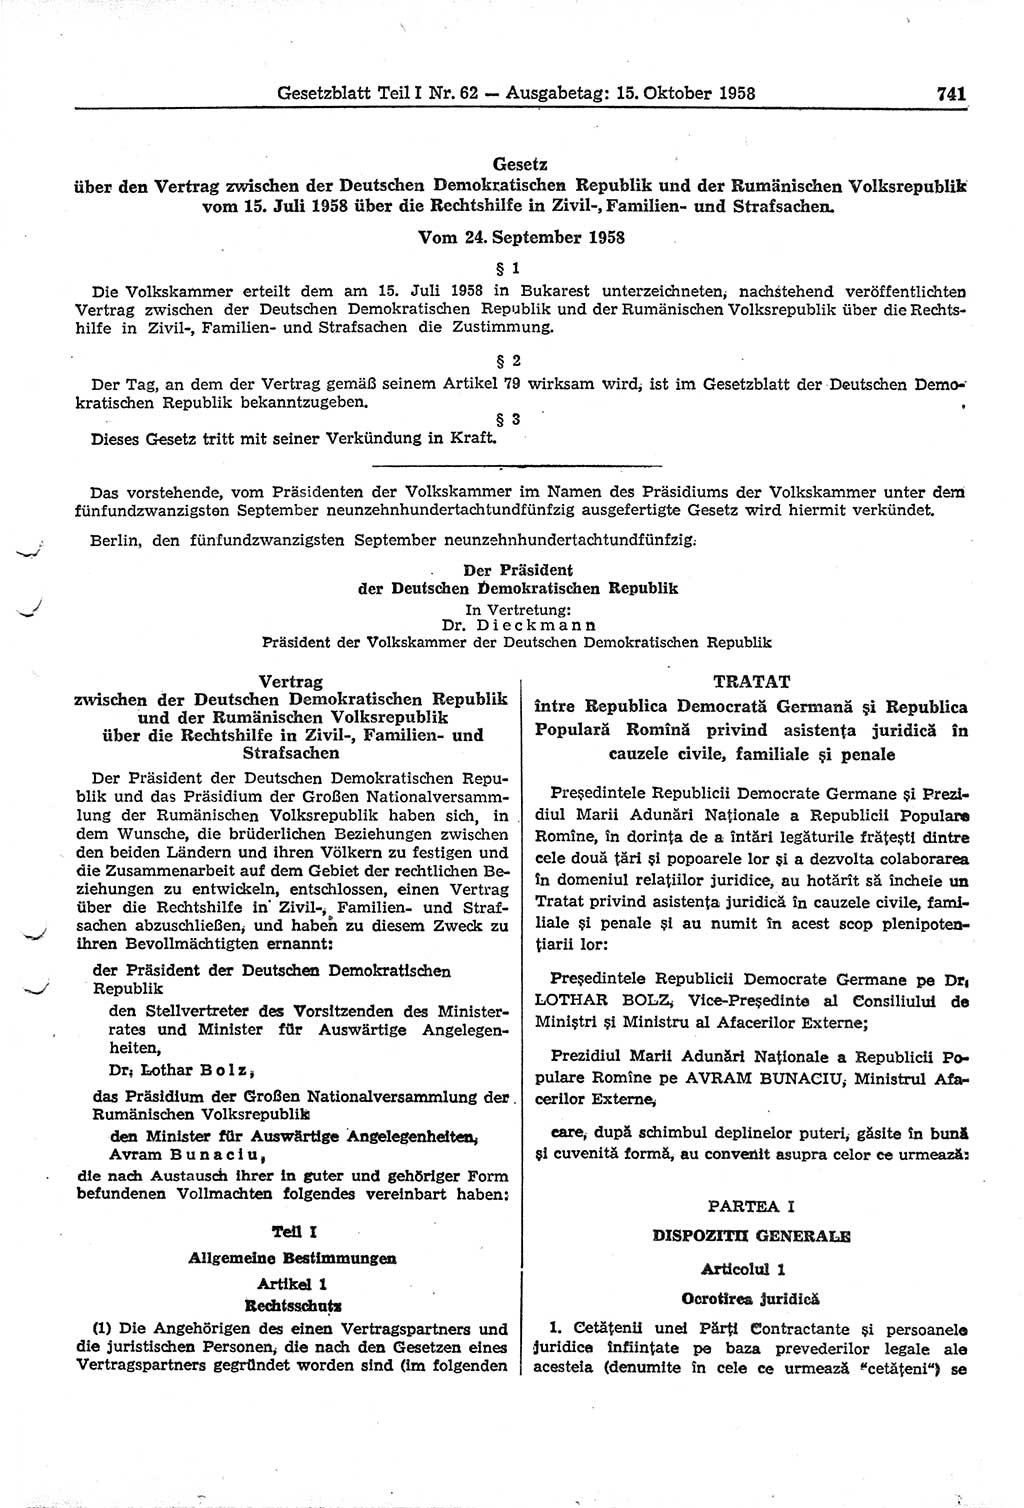 Gesetzblatt (GBl.) der Deutschen Demokratischen Republik (DDR) Teil Ⅰ 1958, Seite 741 (GBl. DDR Ⅰ 1958, S. 741)